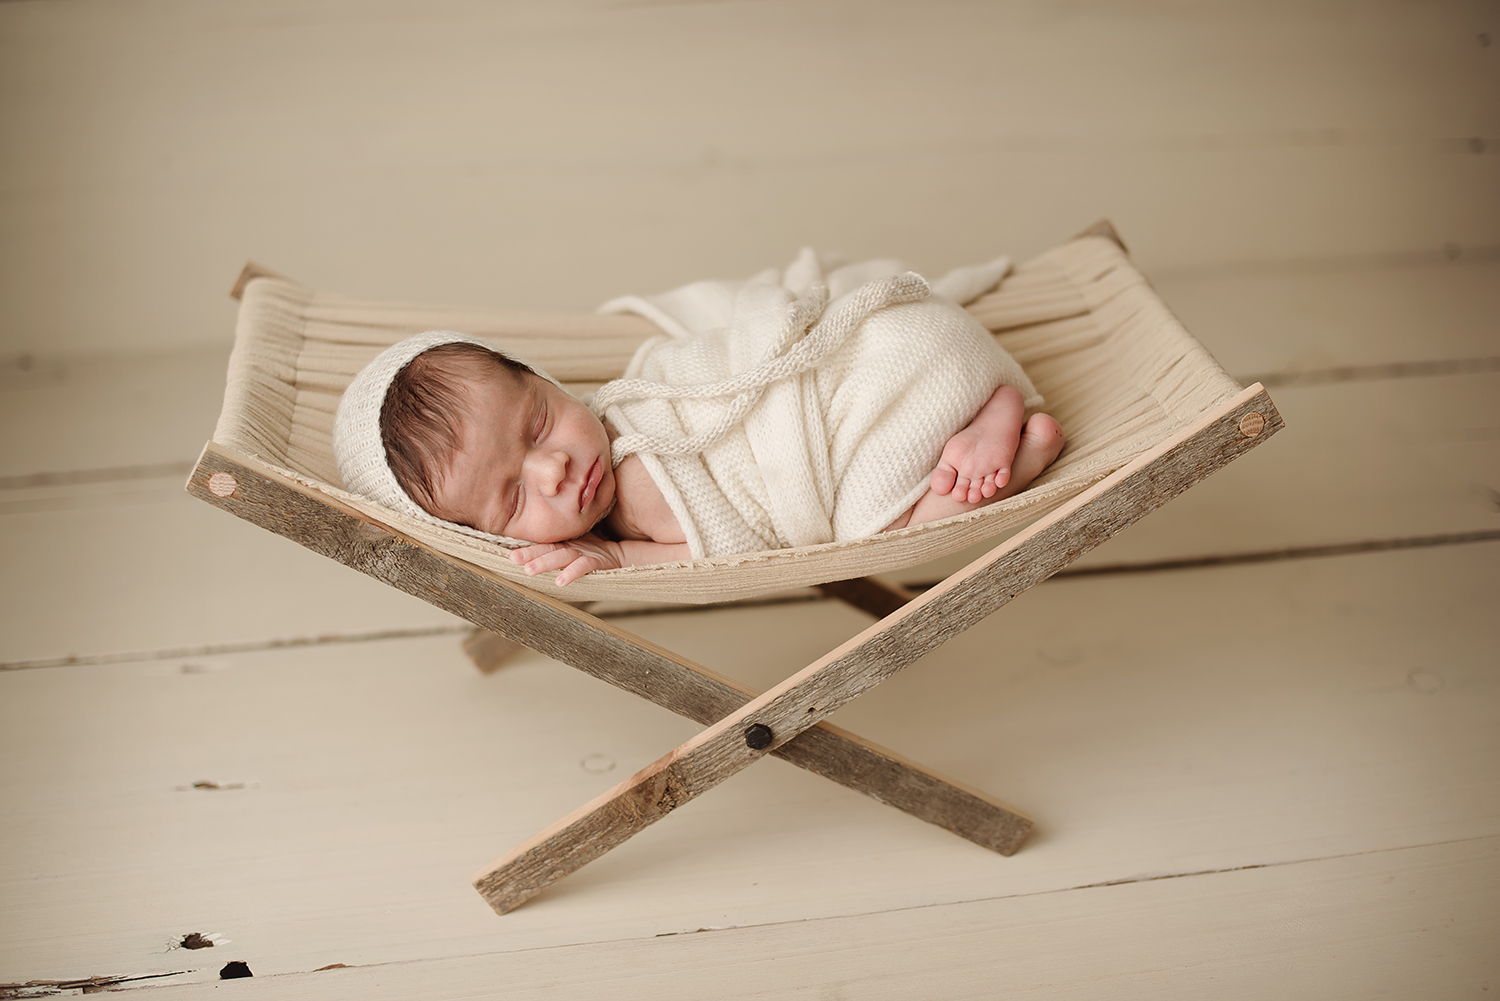 columbus-ohio-newborn-photographer-bare-baby-photography.jpg